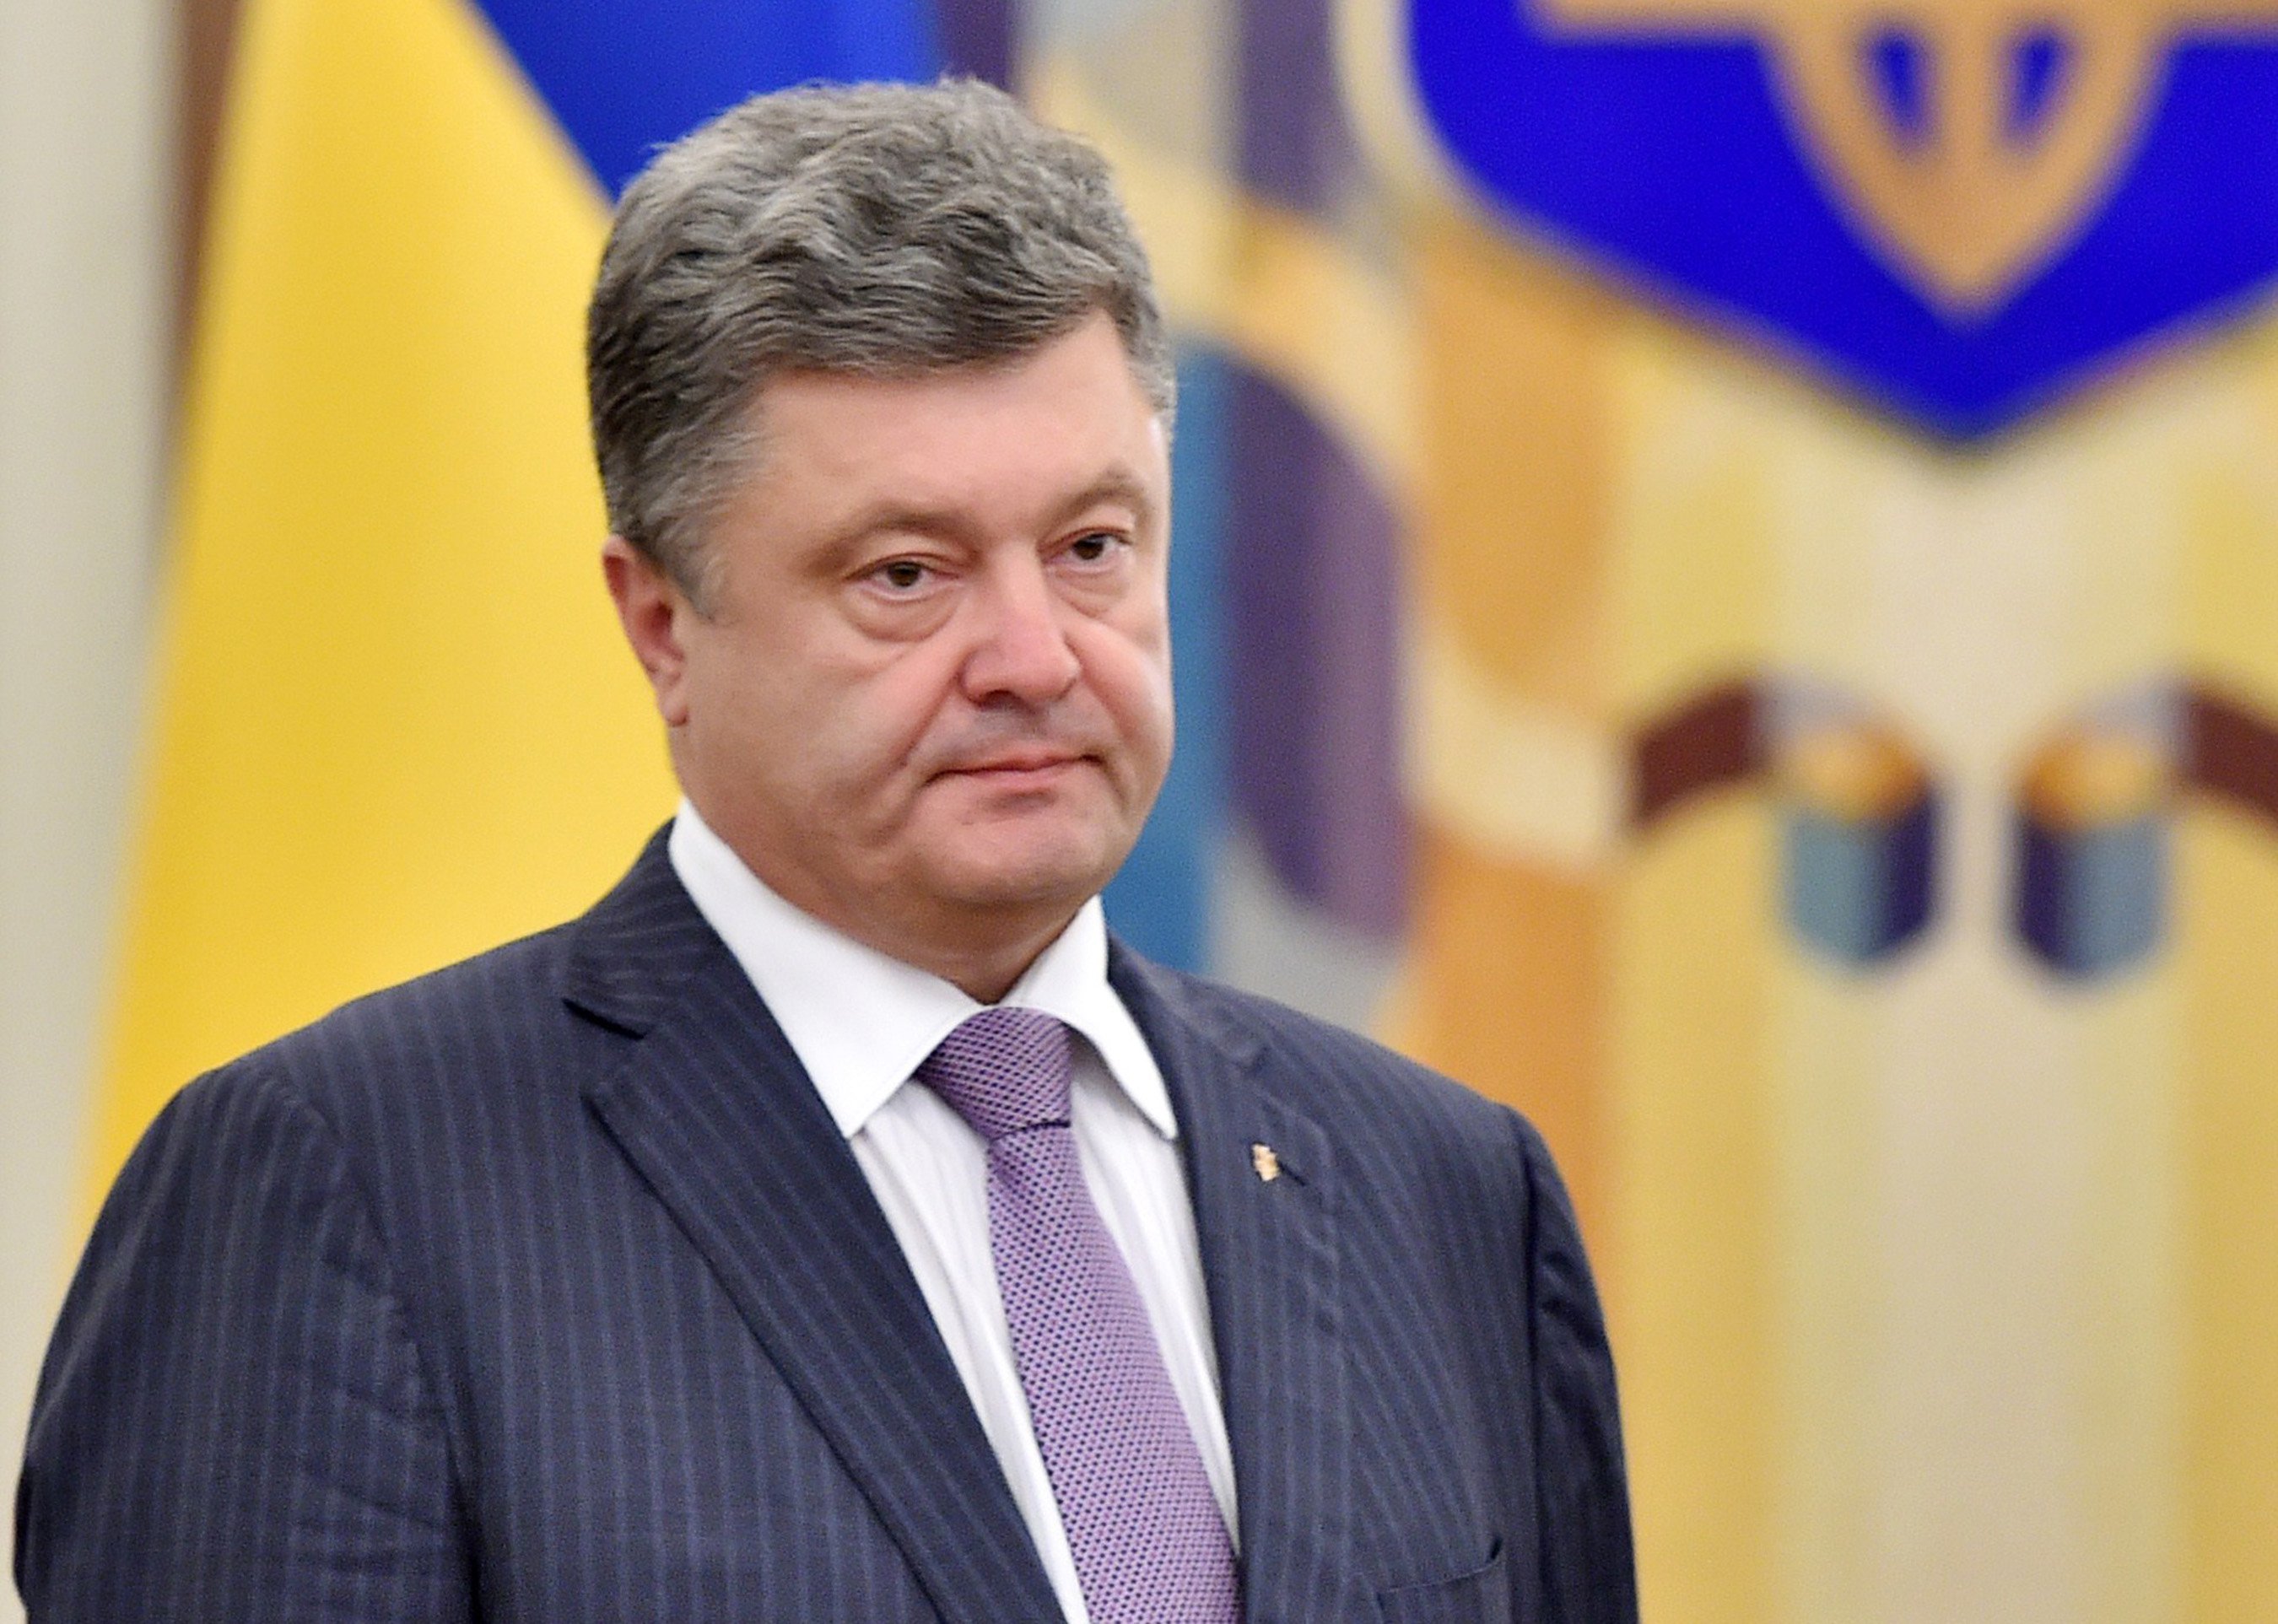 Центр Львова перекрыт из-за визита Порошенко